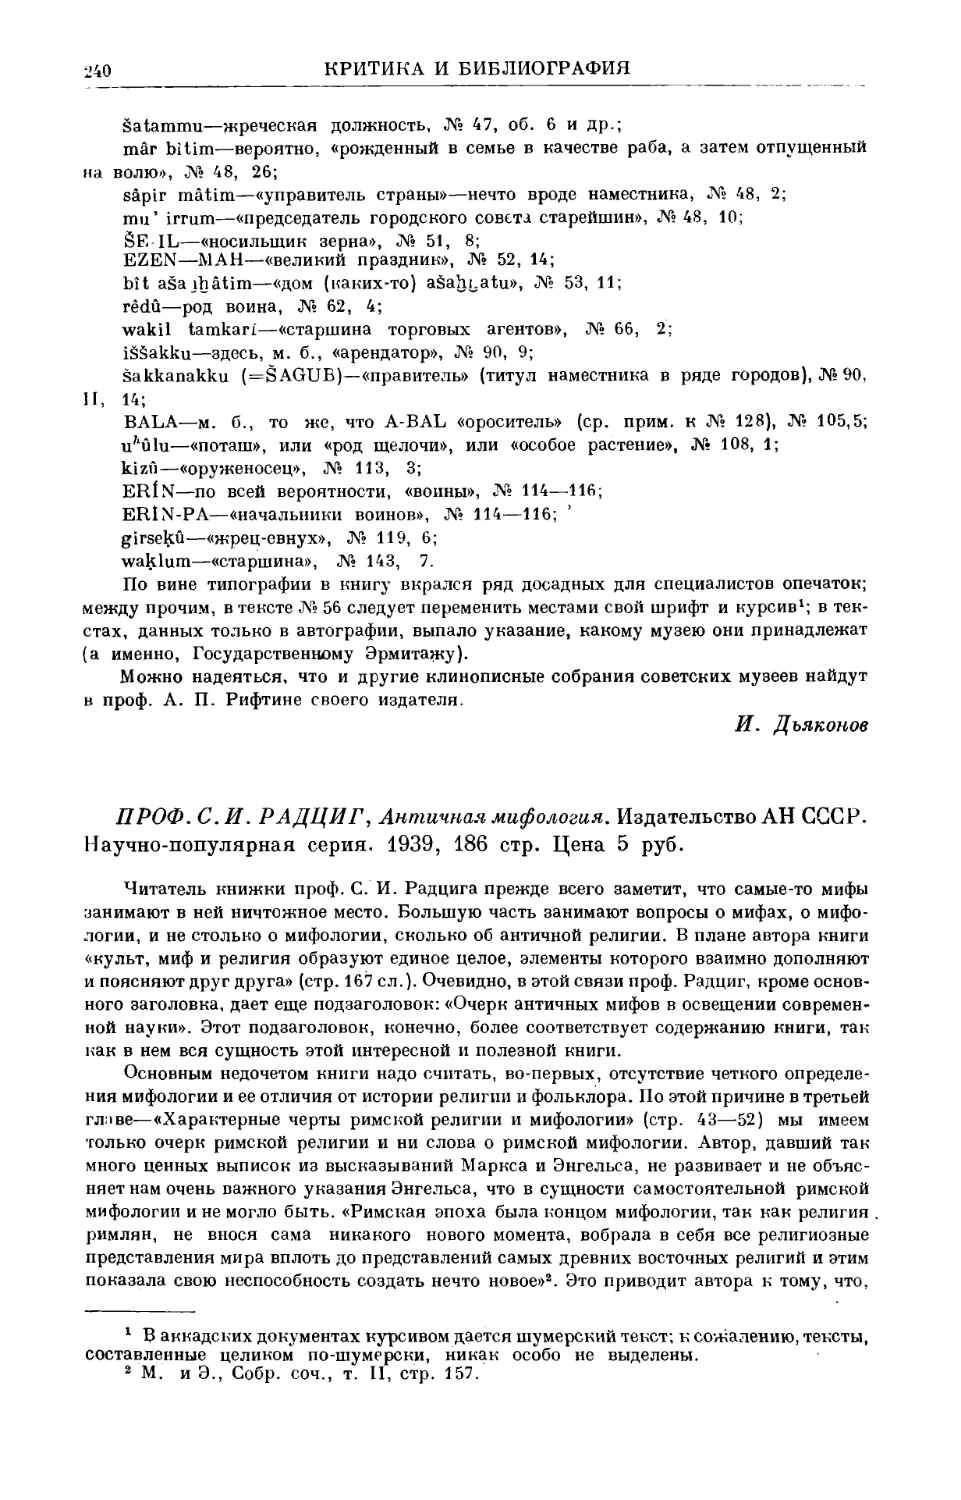 Кондратьев С.П. – С.И. Радциг. Античная мифология. М.–Л., 1939